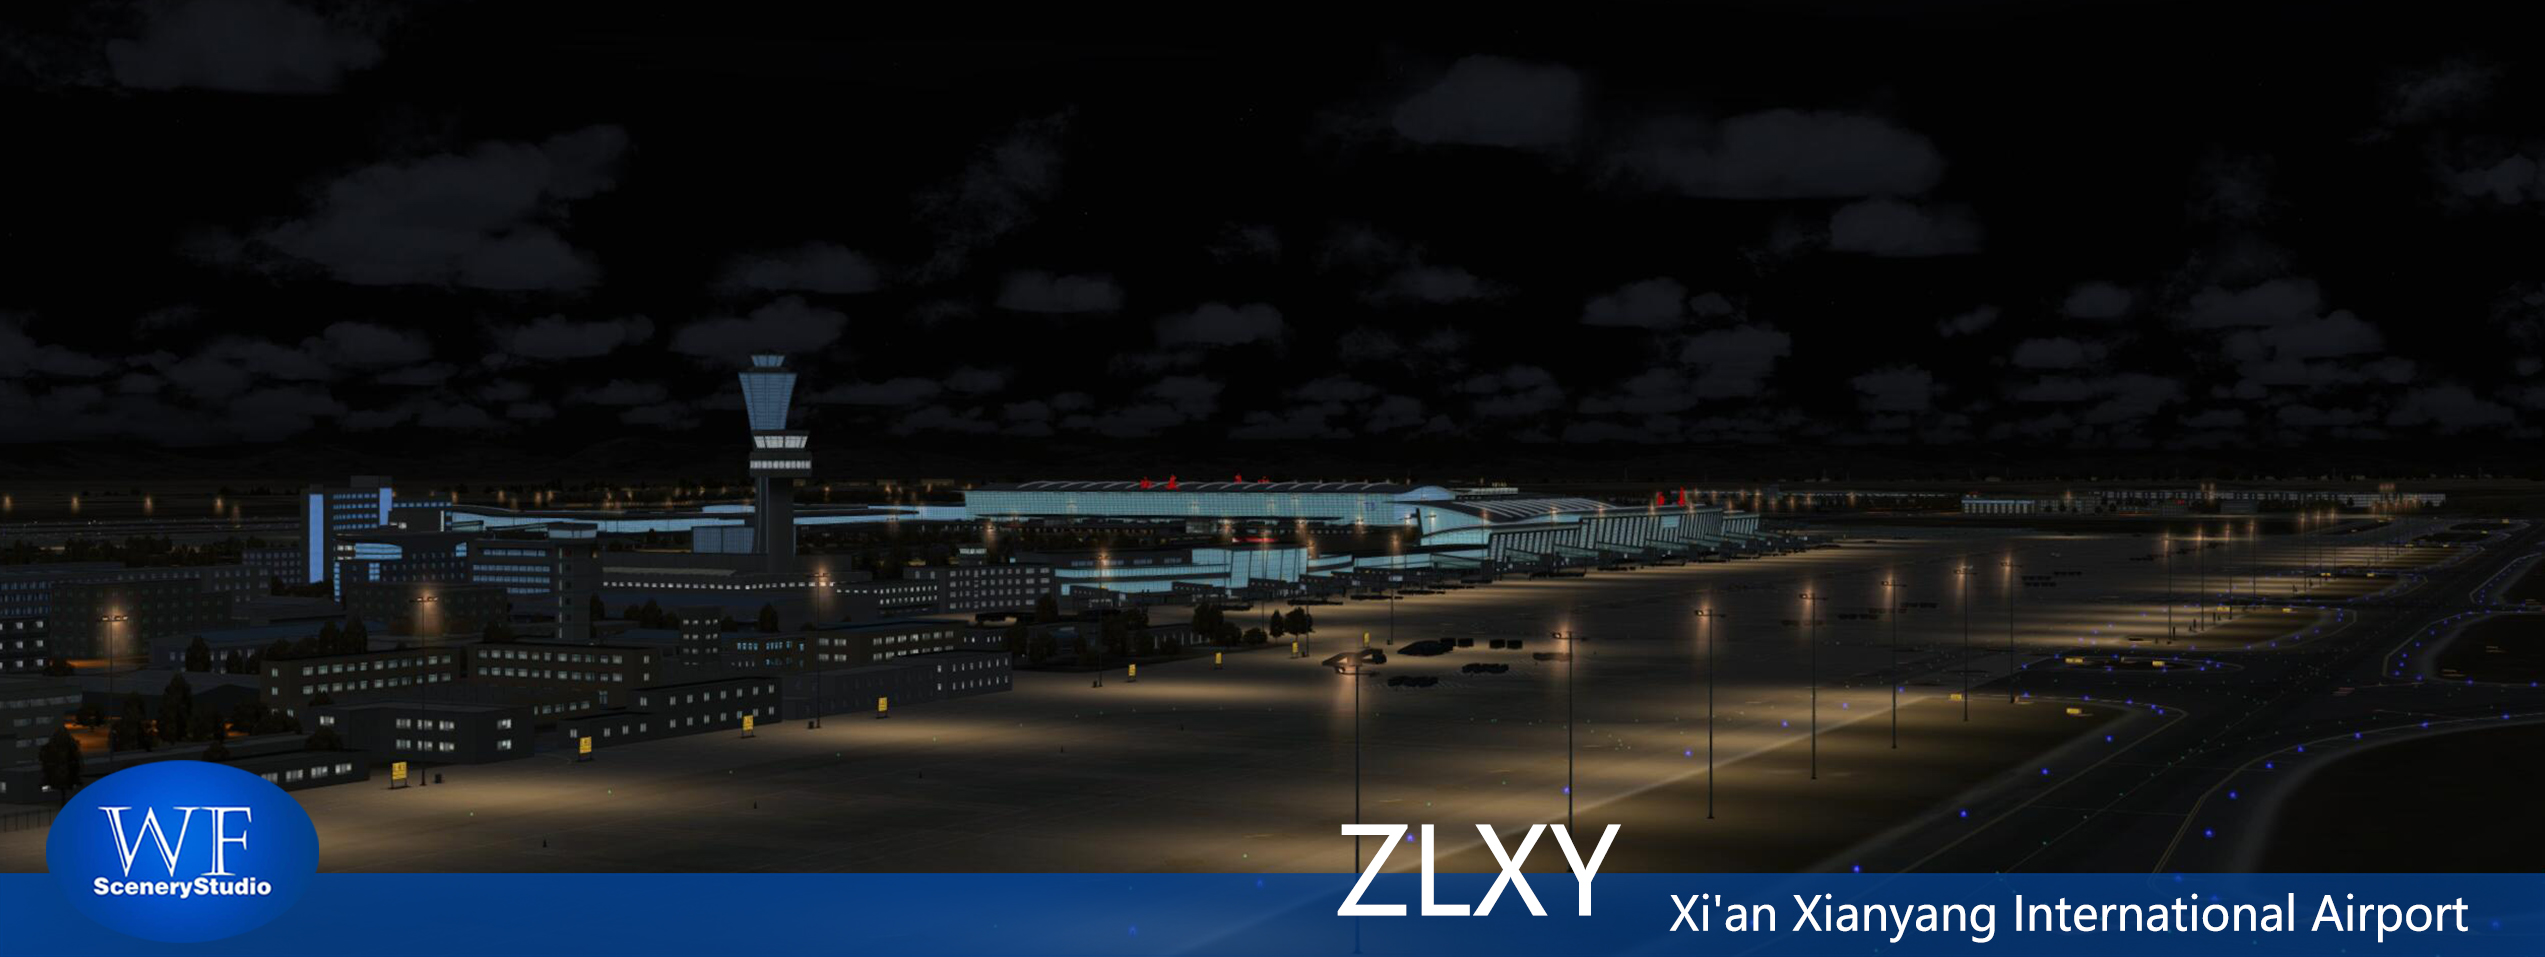 西安咸阳国际机场FSX和P3DV3 版本发布-415 